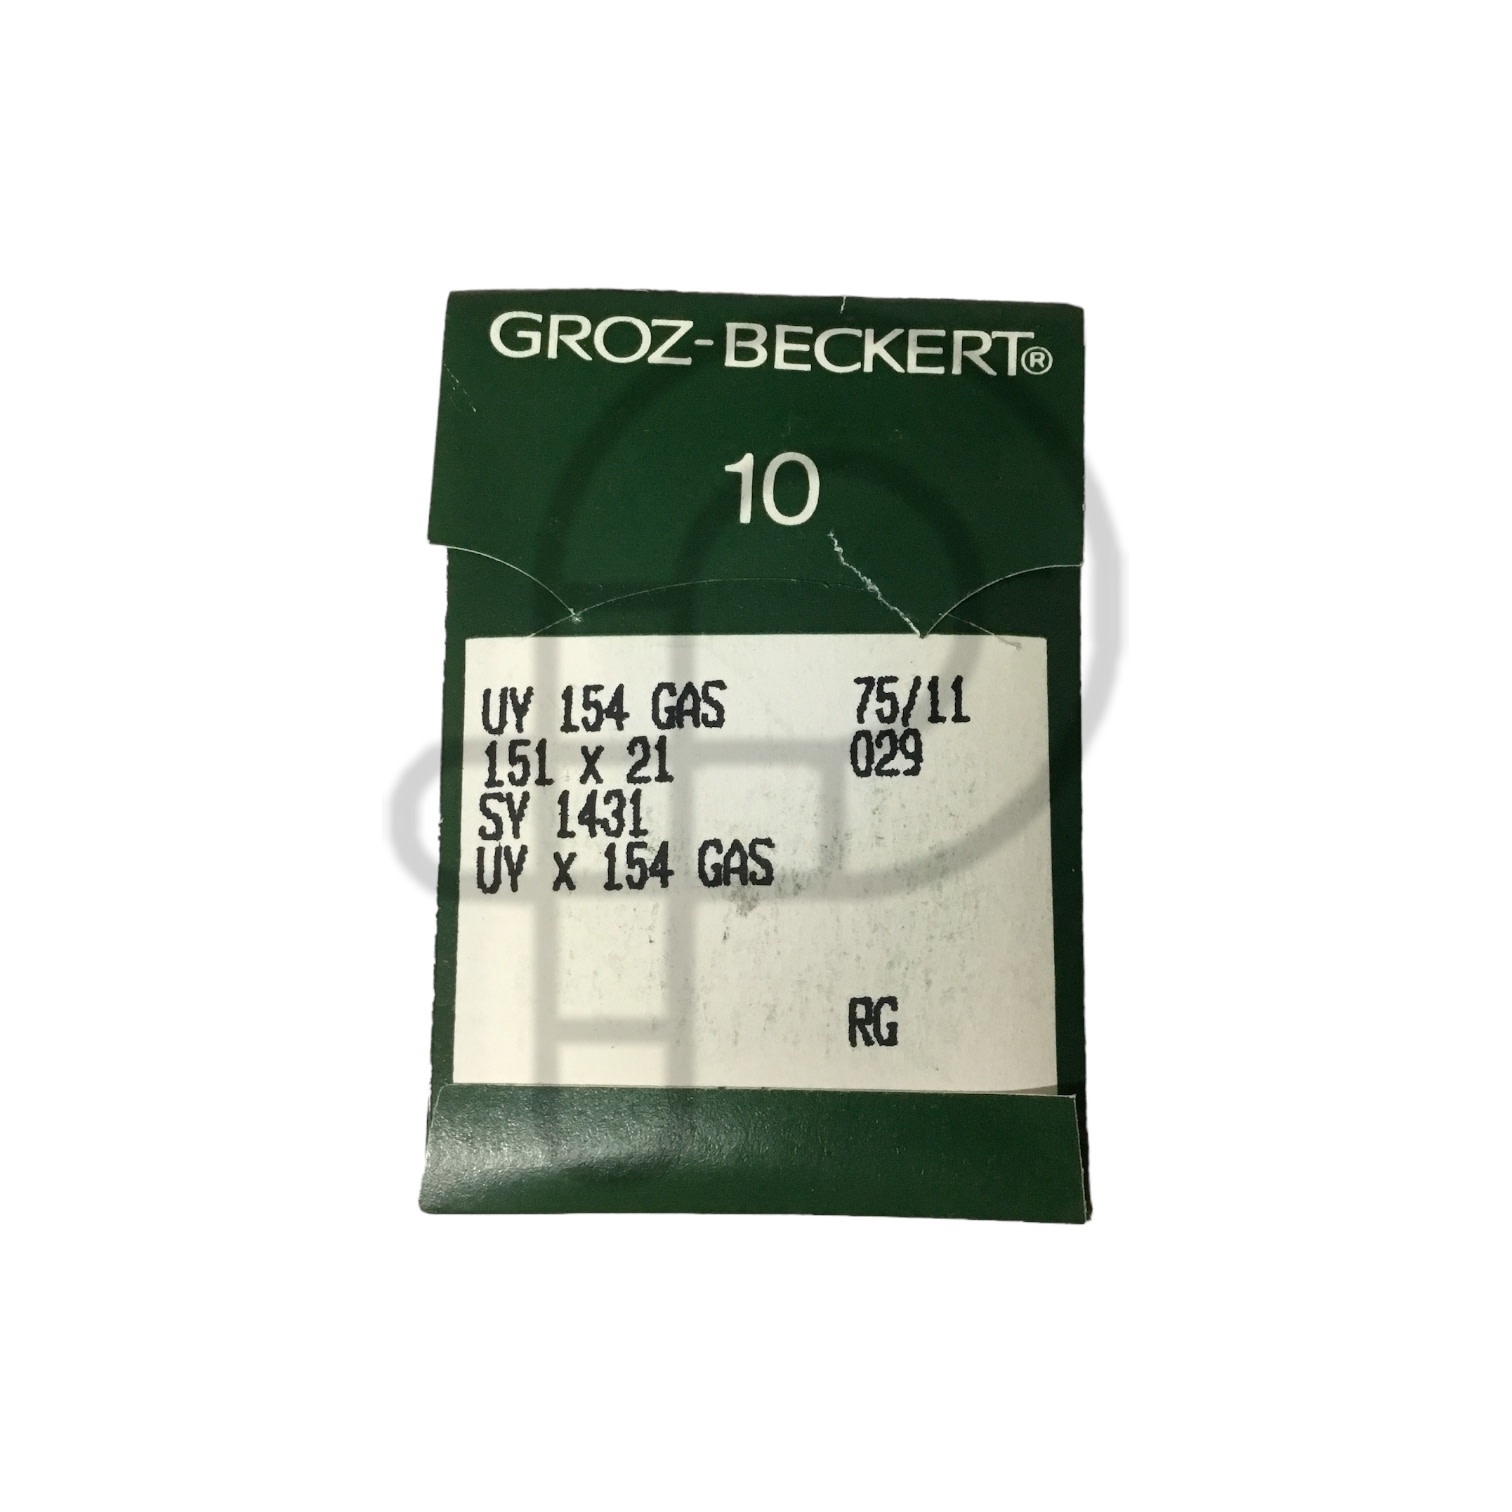 Groz - Beckert DISC Groz-Beckert UY154 GAS size 75/11 pack of 10